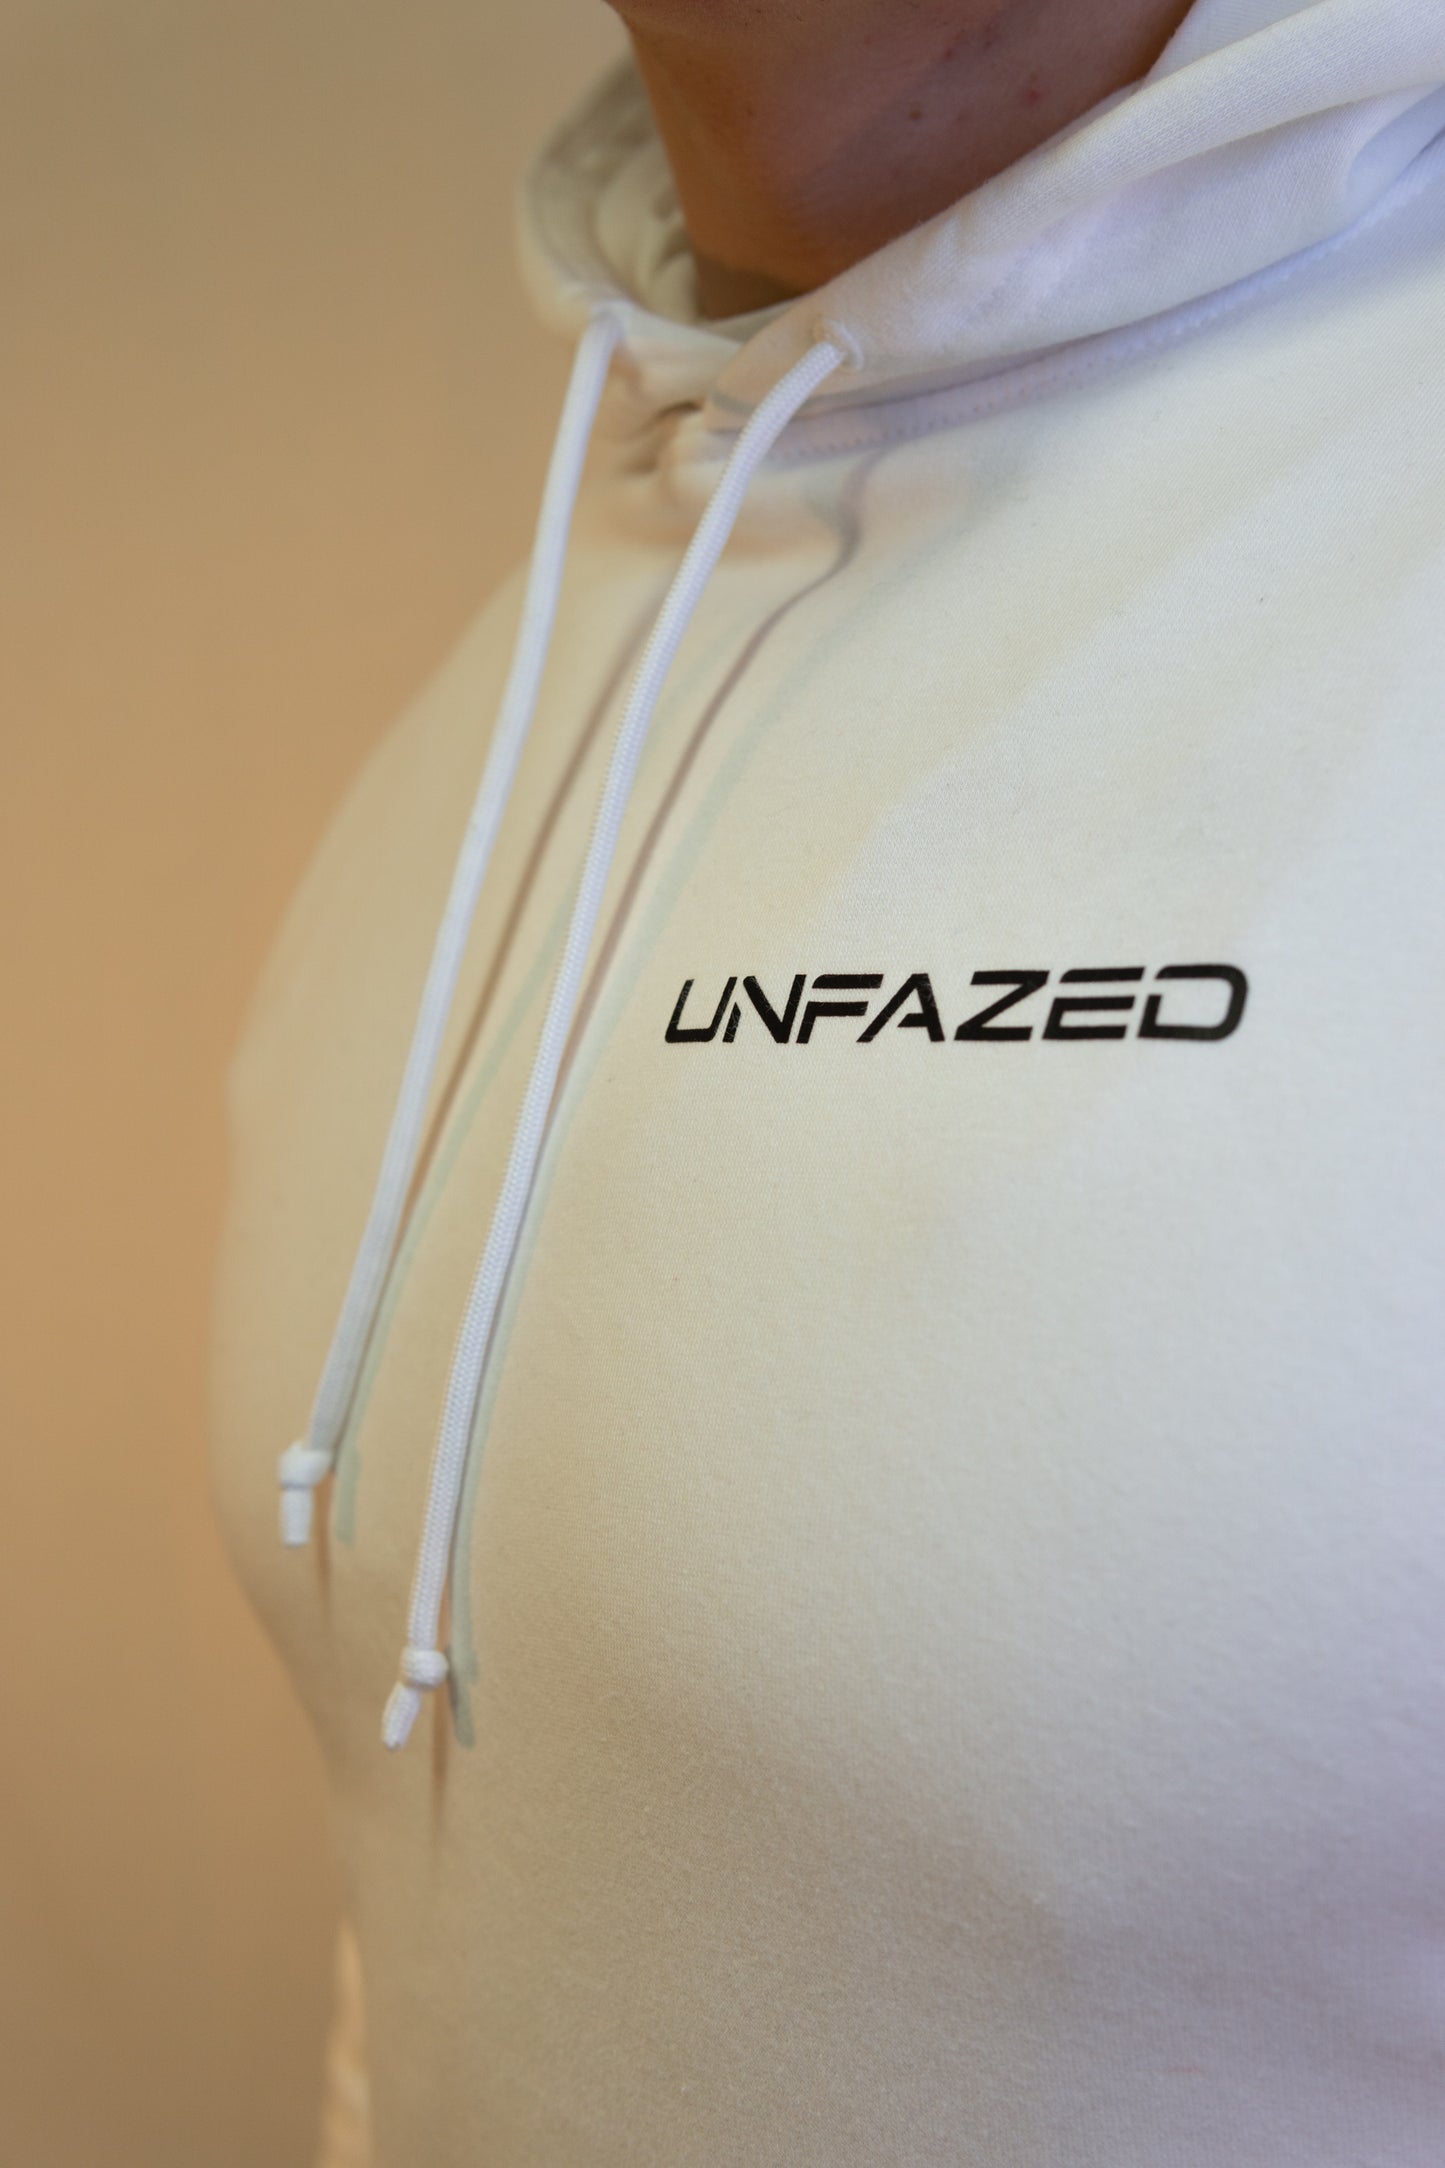 Unfazed OG hoodie